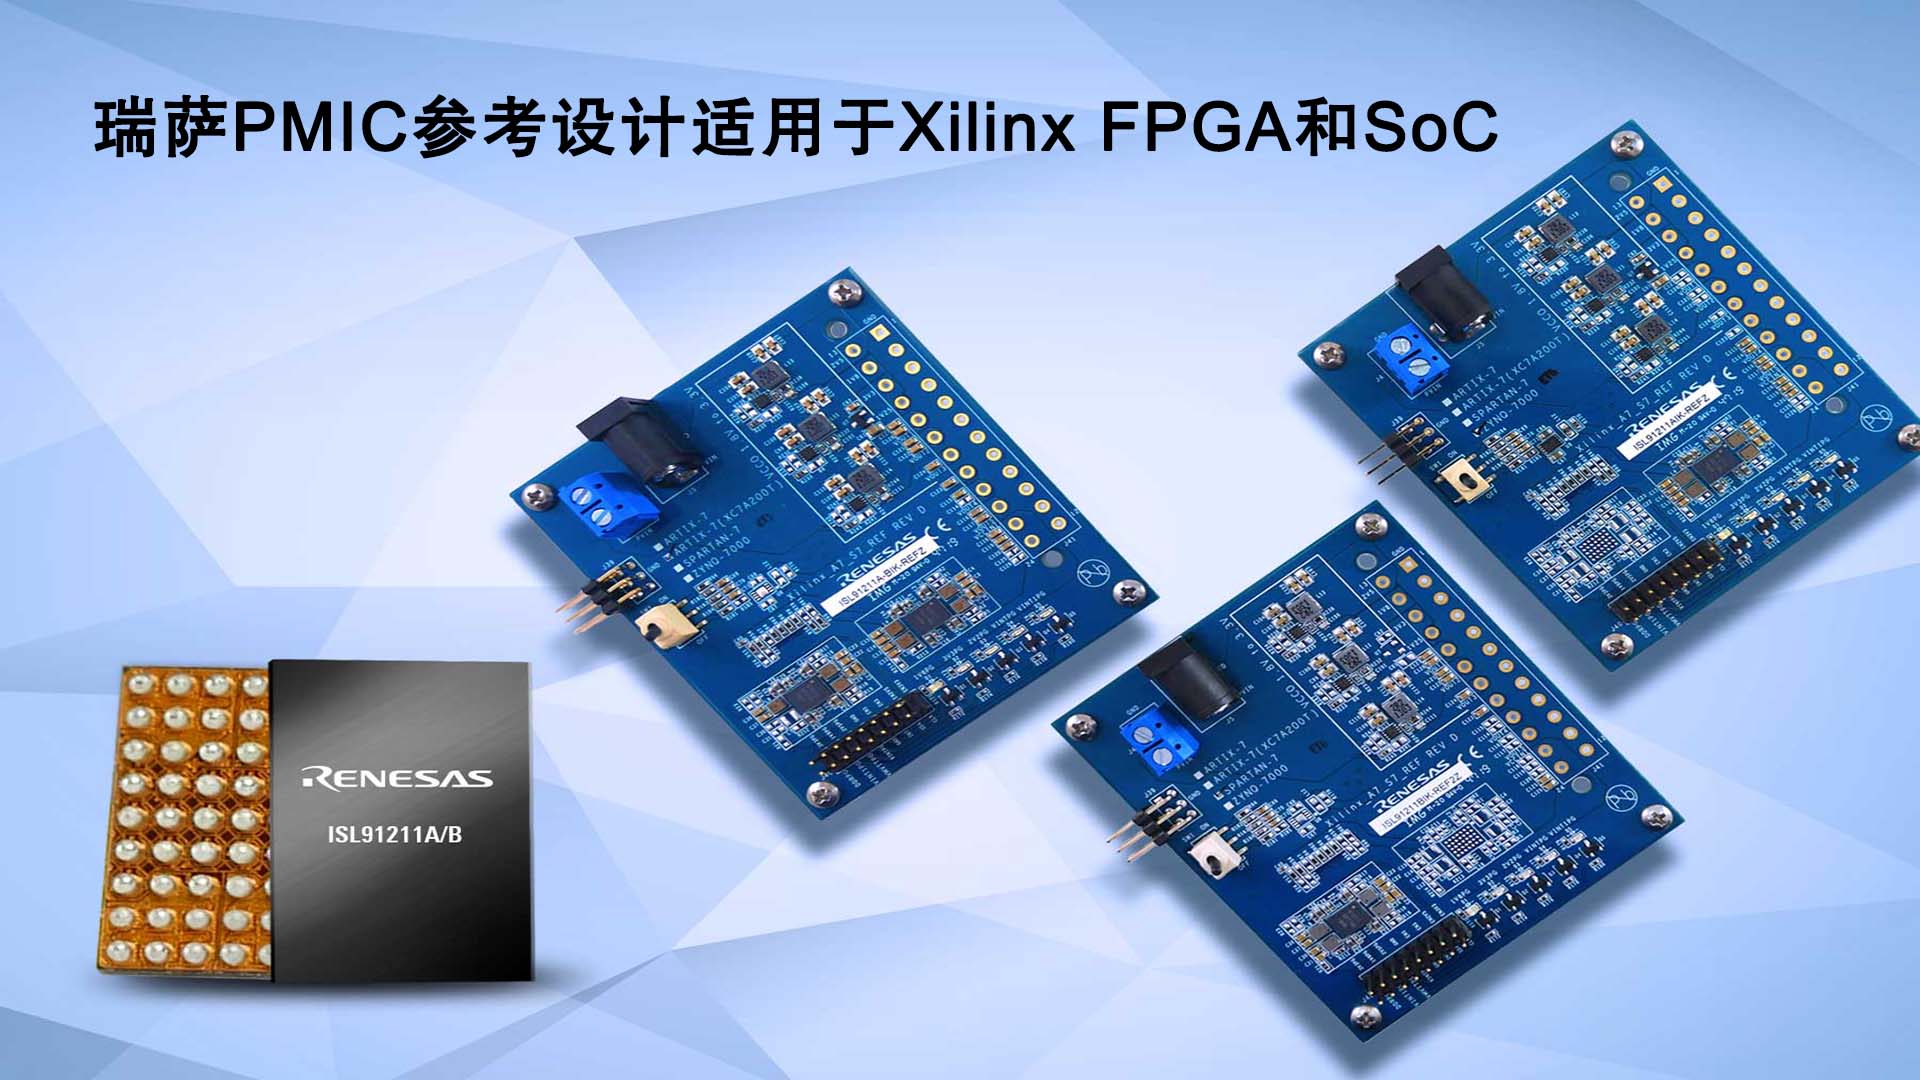 瑞萨电子推出面向Xilinx FPGA和SoC的全新PMIC参考设计